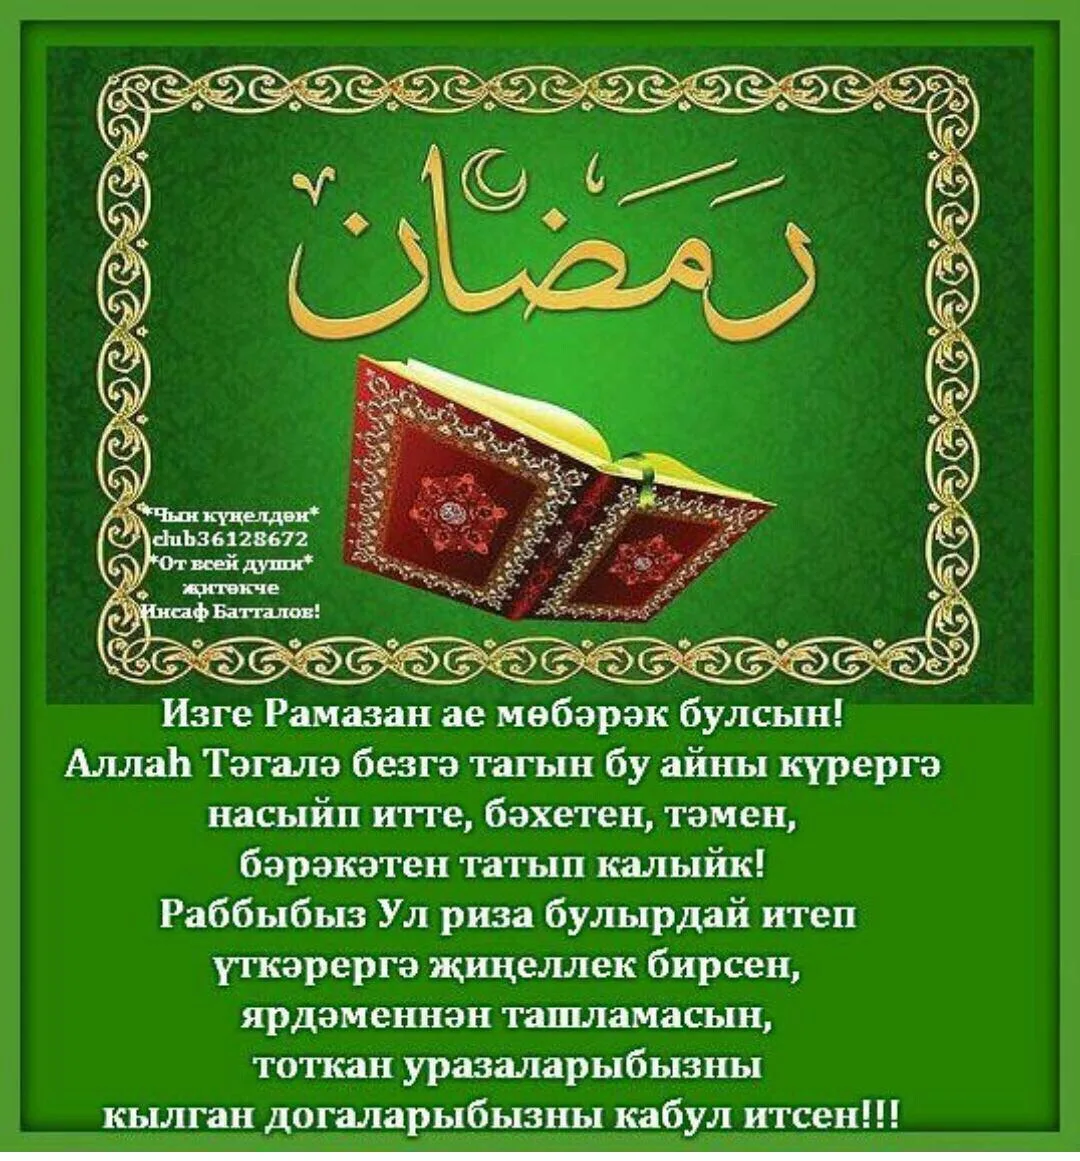 Поздравление с ураза байрам на кумыкском языке. Поздравления с татарскими праздниками. Ураза байрам. Поздравление с кража байран. Ураза-байрам поздравления.